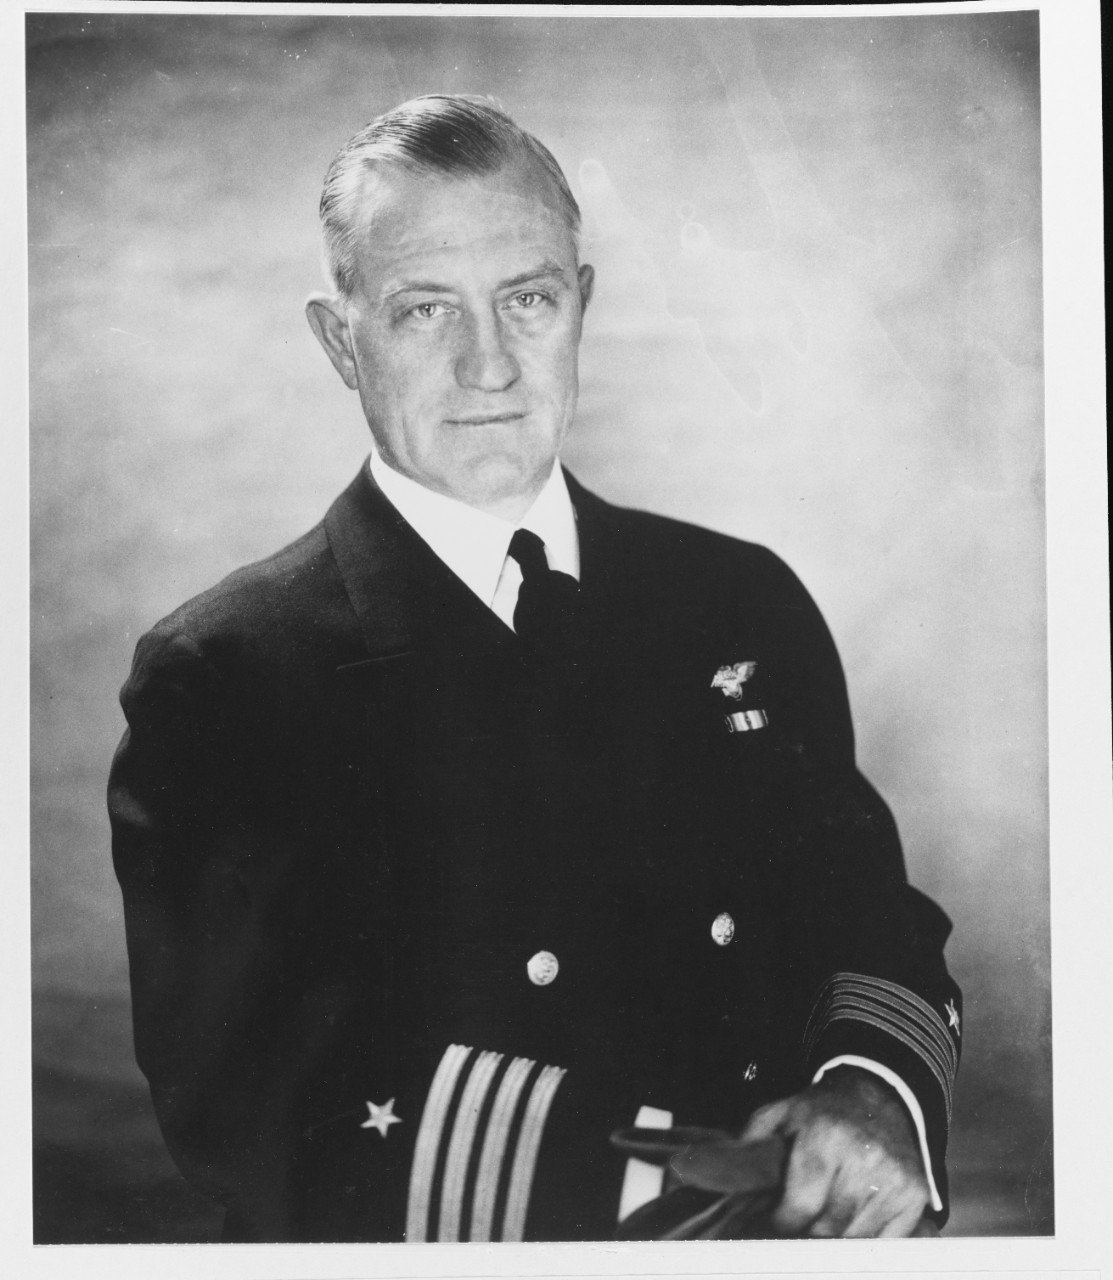 Captain Henry M. Mullinnix, USN